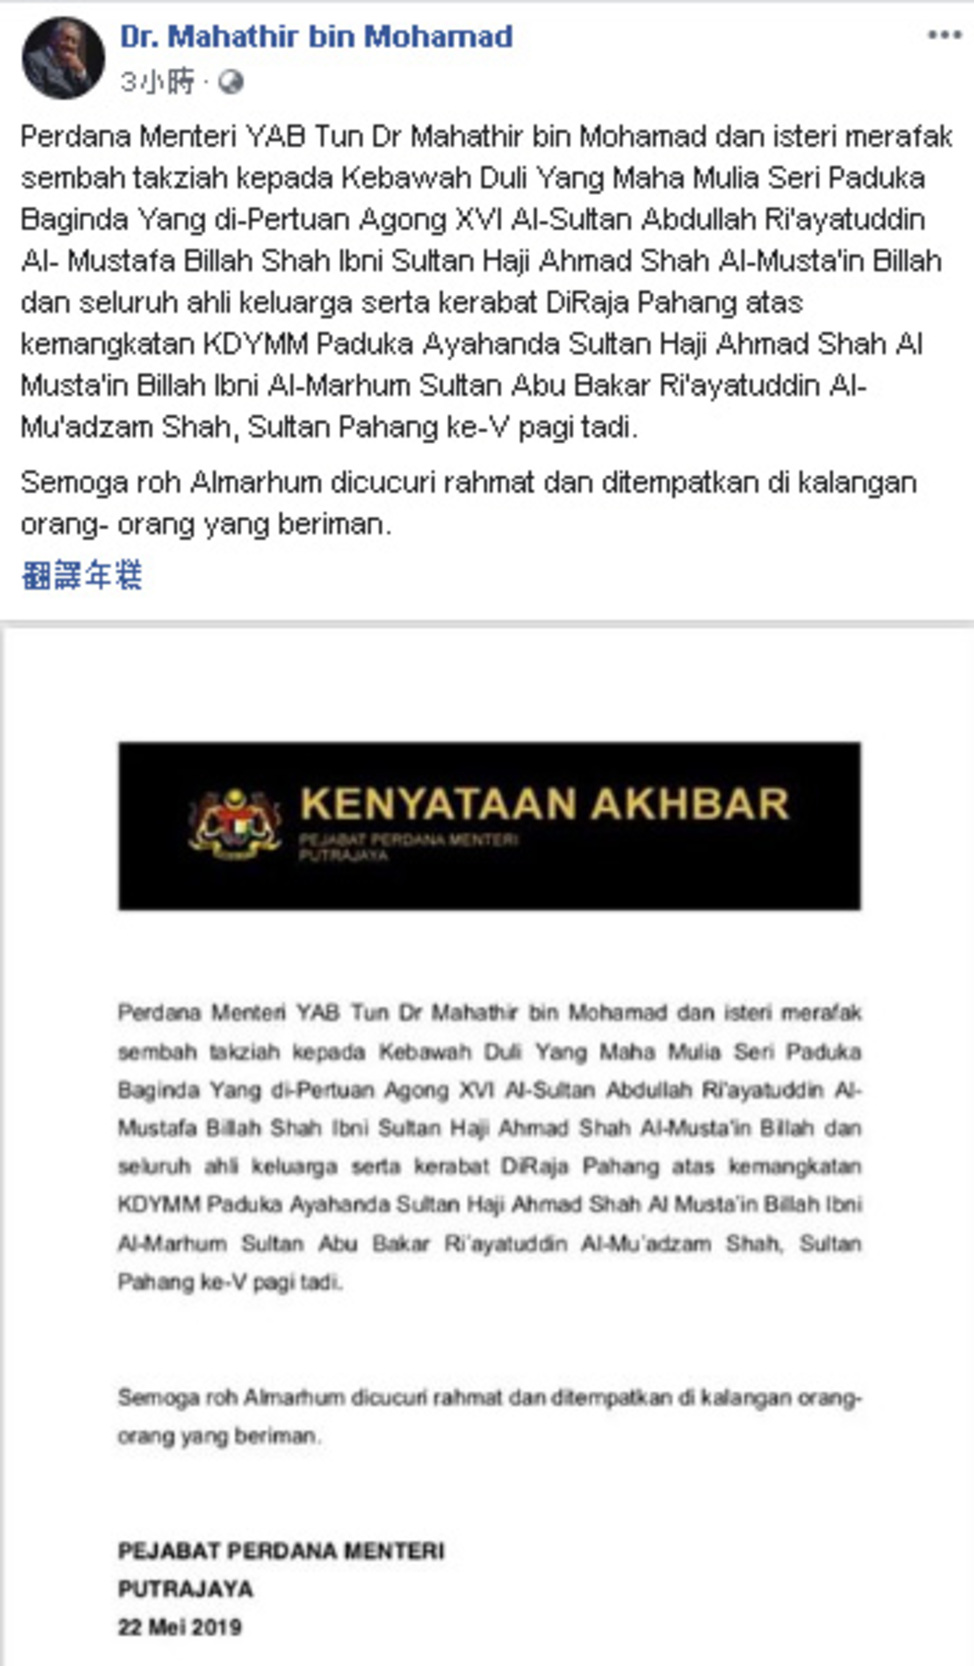 马哈迪在社媒向国家元首苏丹阿都拉陛下及彭州王室致哀。